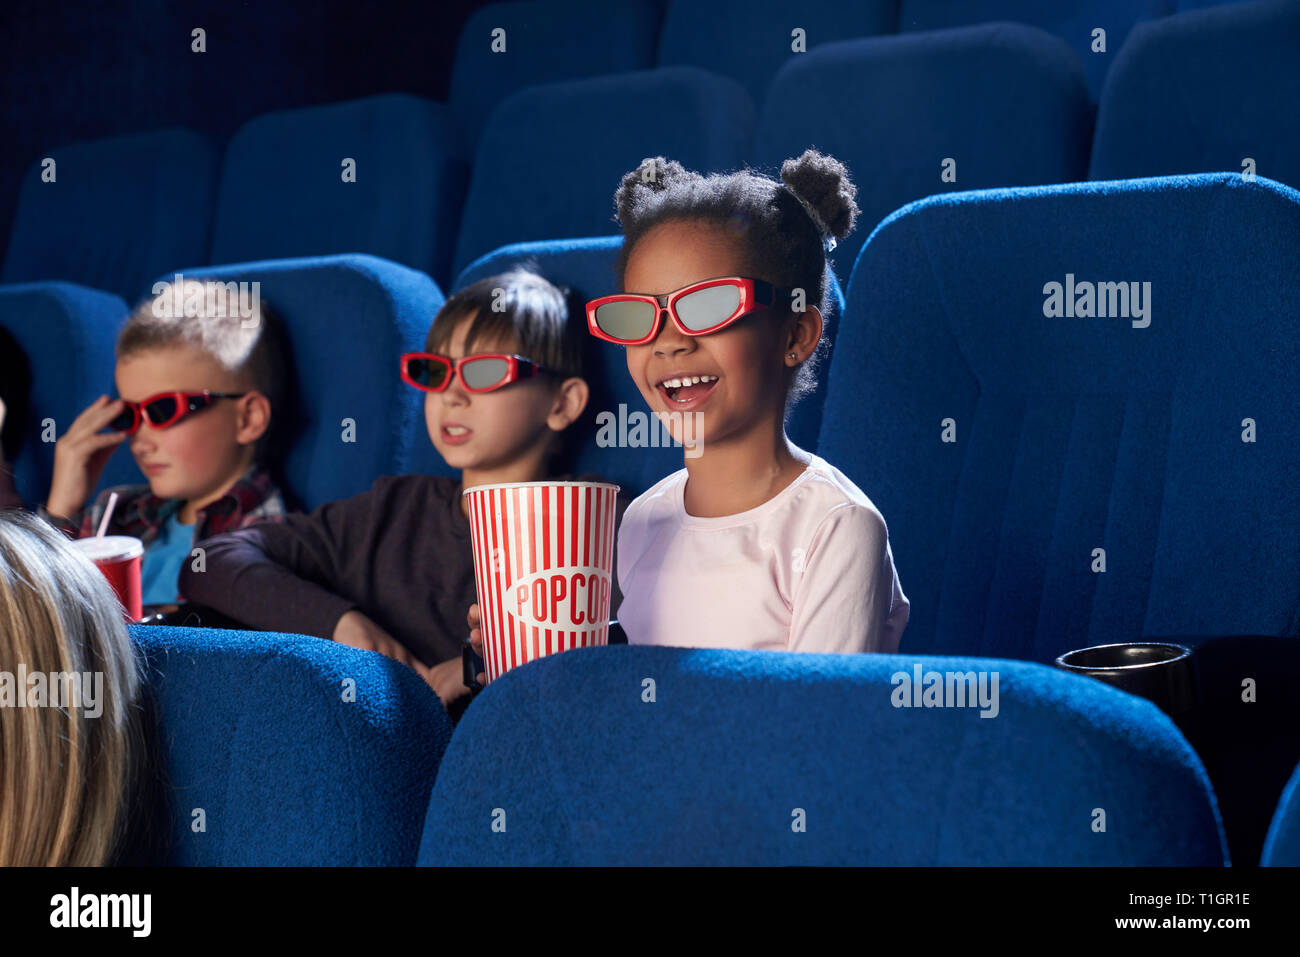 Gai, joyeux des enfants assis dans le cinéma, théâtre, film ou profiter de caricature. Les enfants portant des lunettes en 3D. Cute little girl smiling, holding seau de maîs éclaté. Banque D'Images